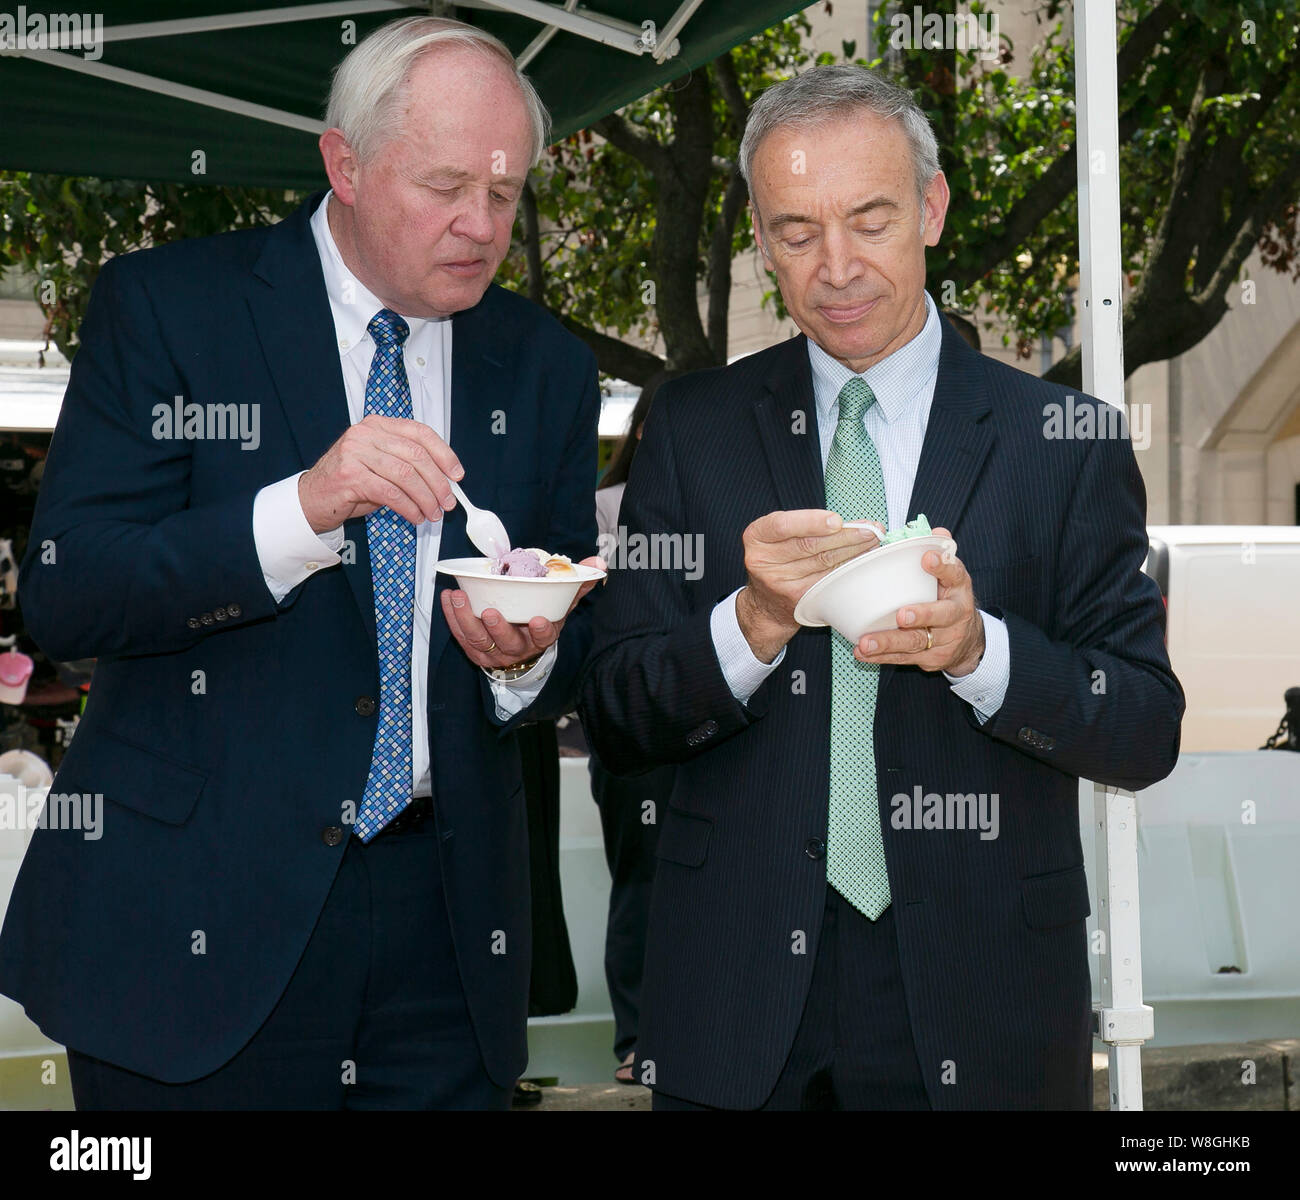 Männer in Anzügen Eis essen am Nationalen Eis Tag Feier war des US-Außenministeriums Agrculture gehalten Stockfoto